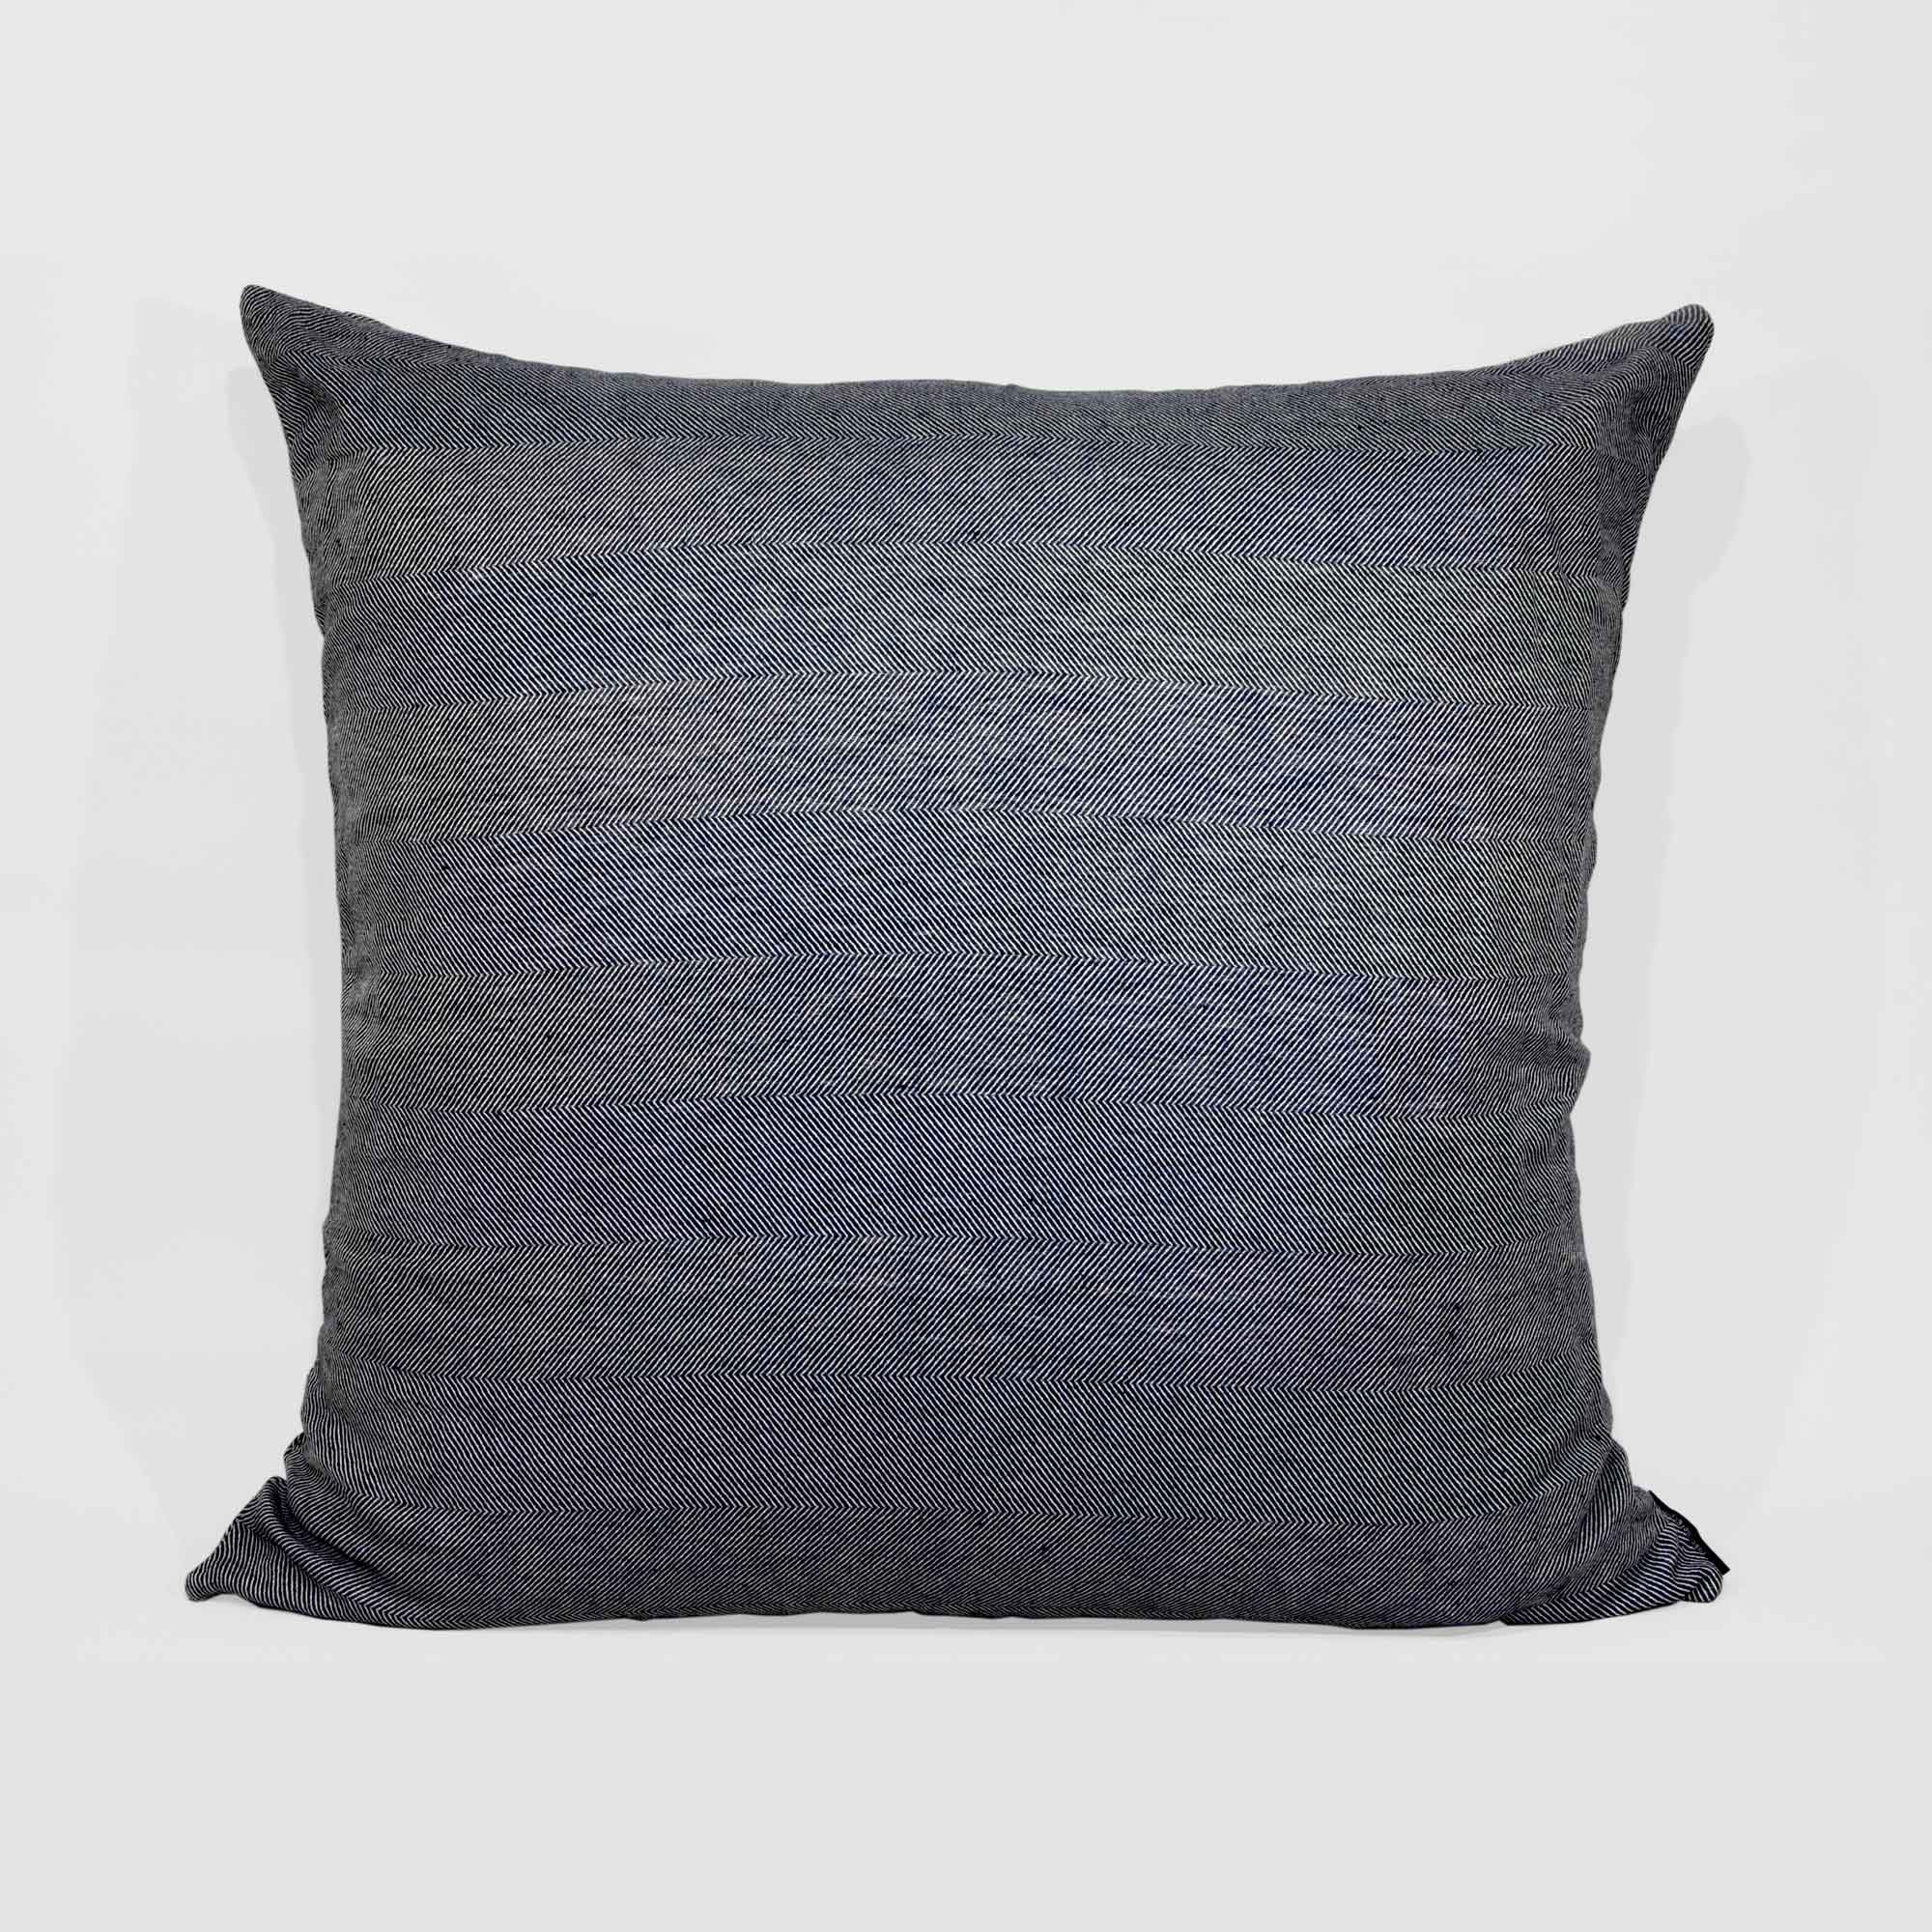 Floor cushion cover linen/cotton indigo blue design by Anne Rosenberg, RosenbergCph